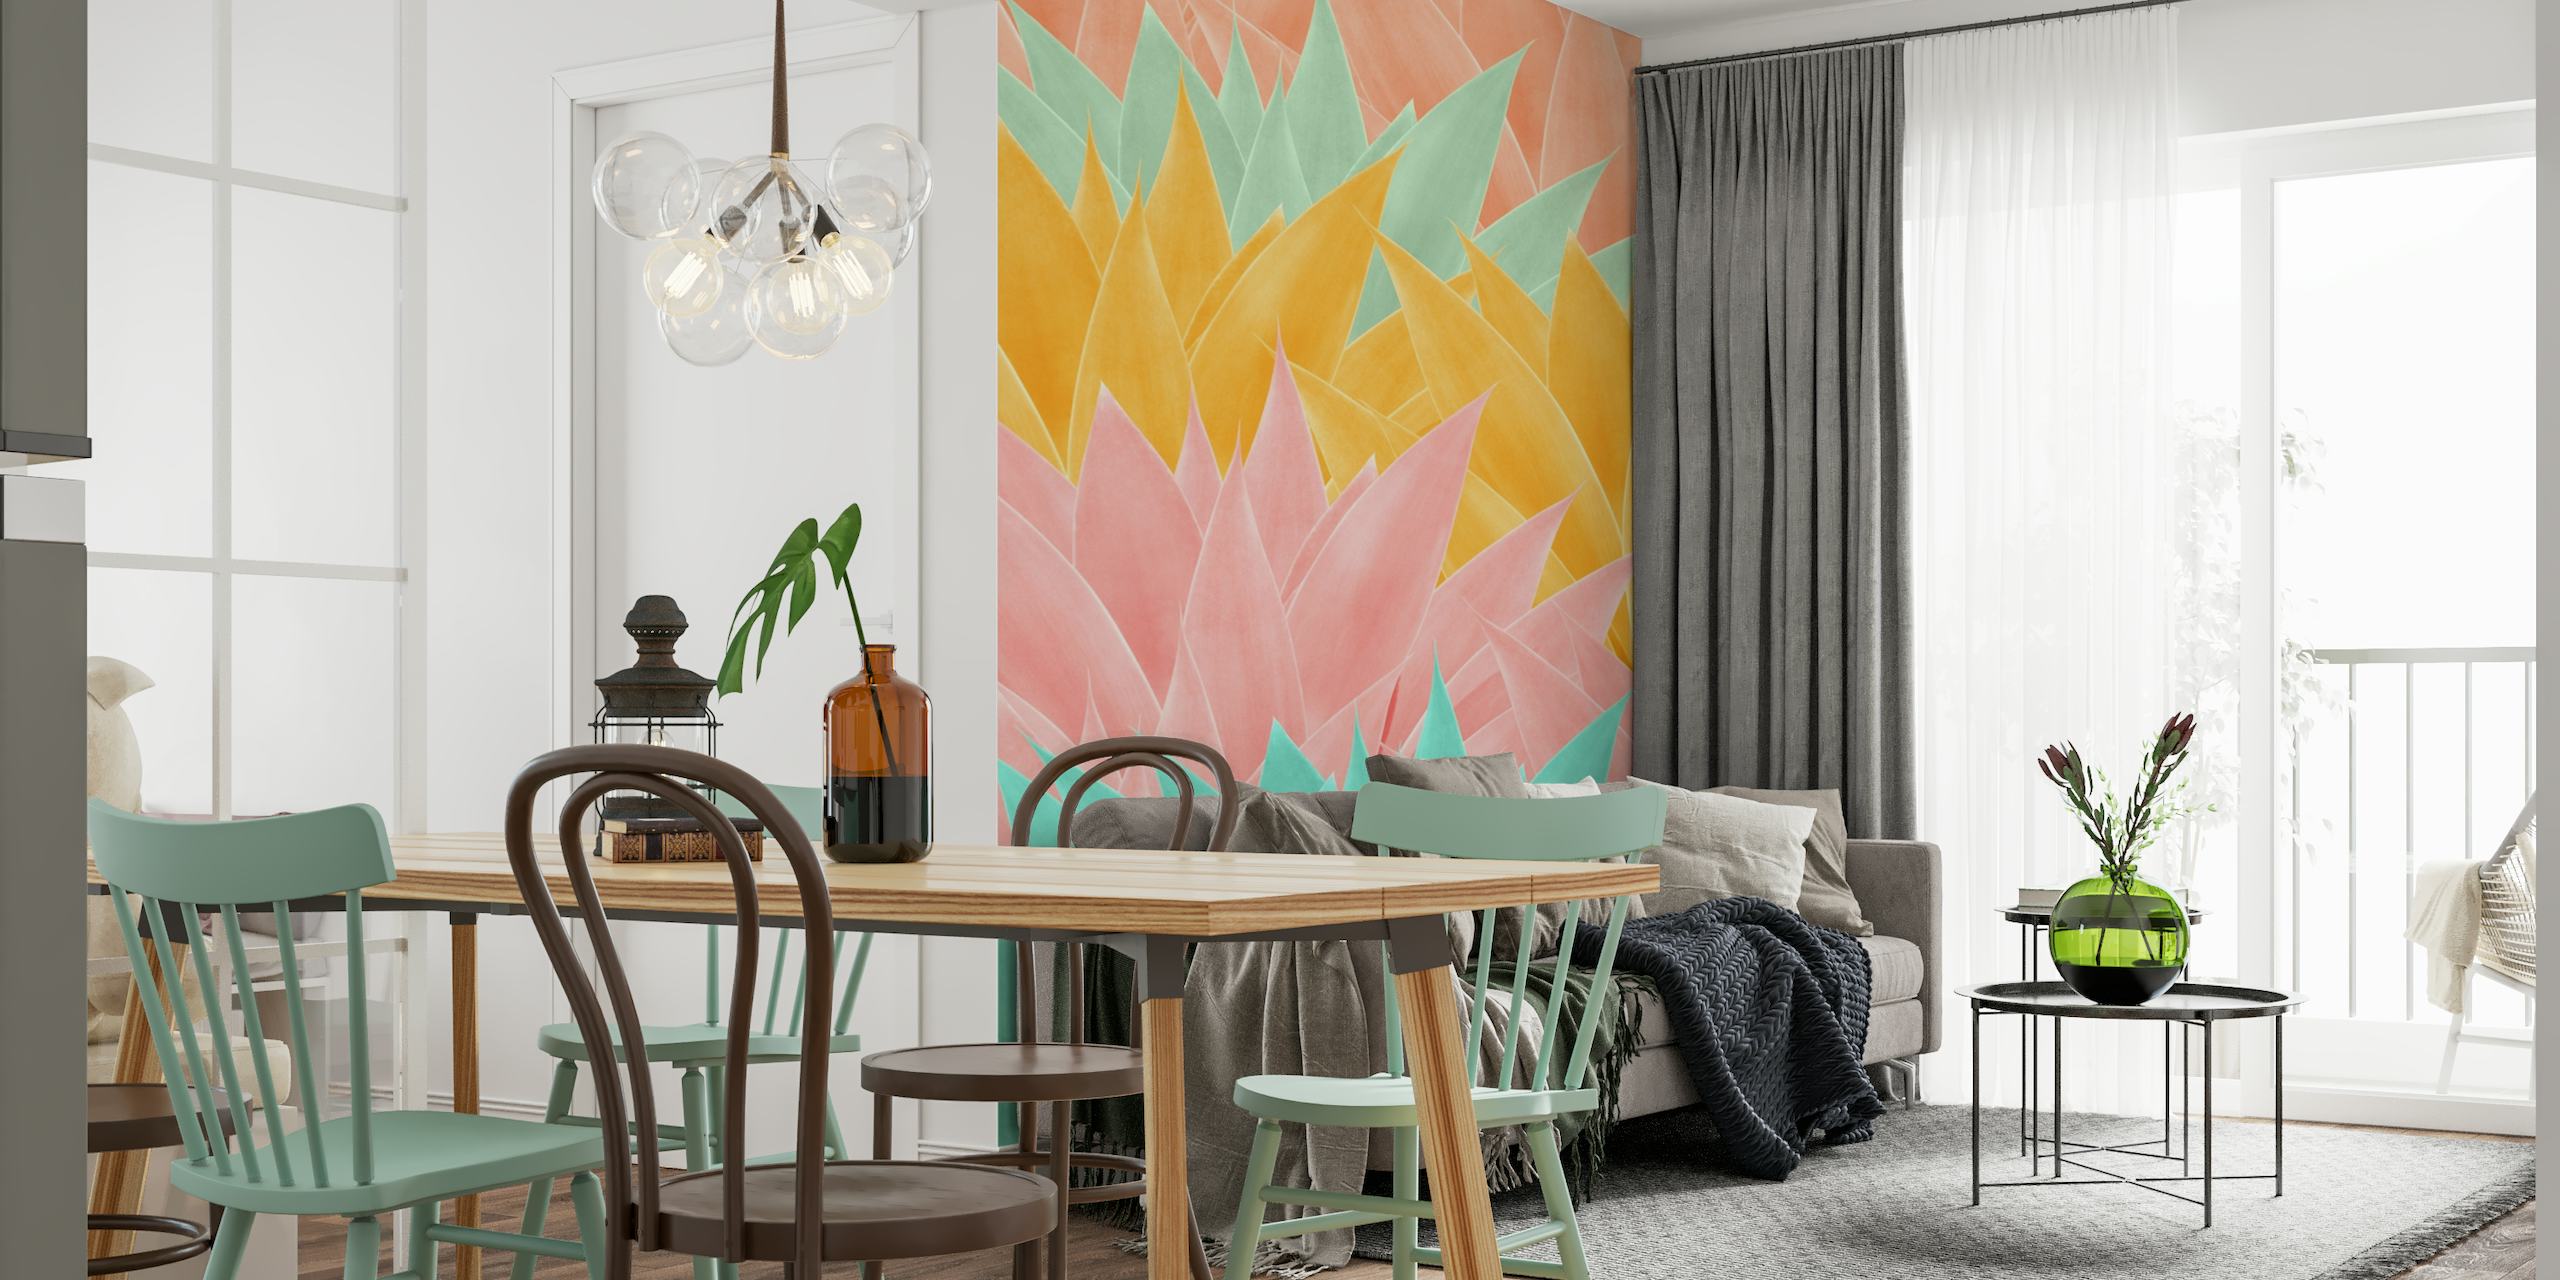 Papier peint mural à motif de feuilles d'agave colorées dans les tons de rose, de jaune et d'aqua pour un design d'intérieur contemporain.